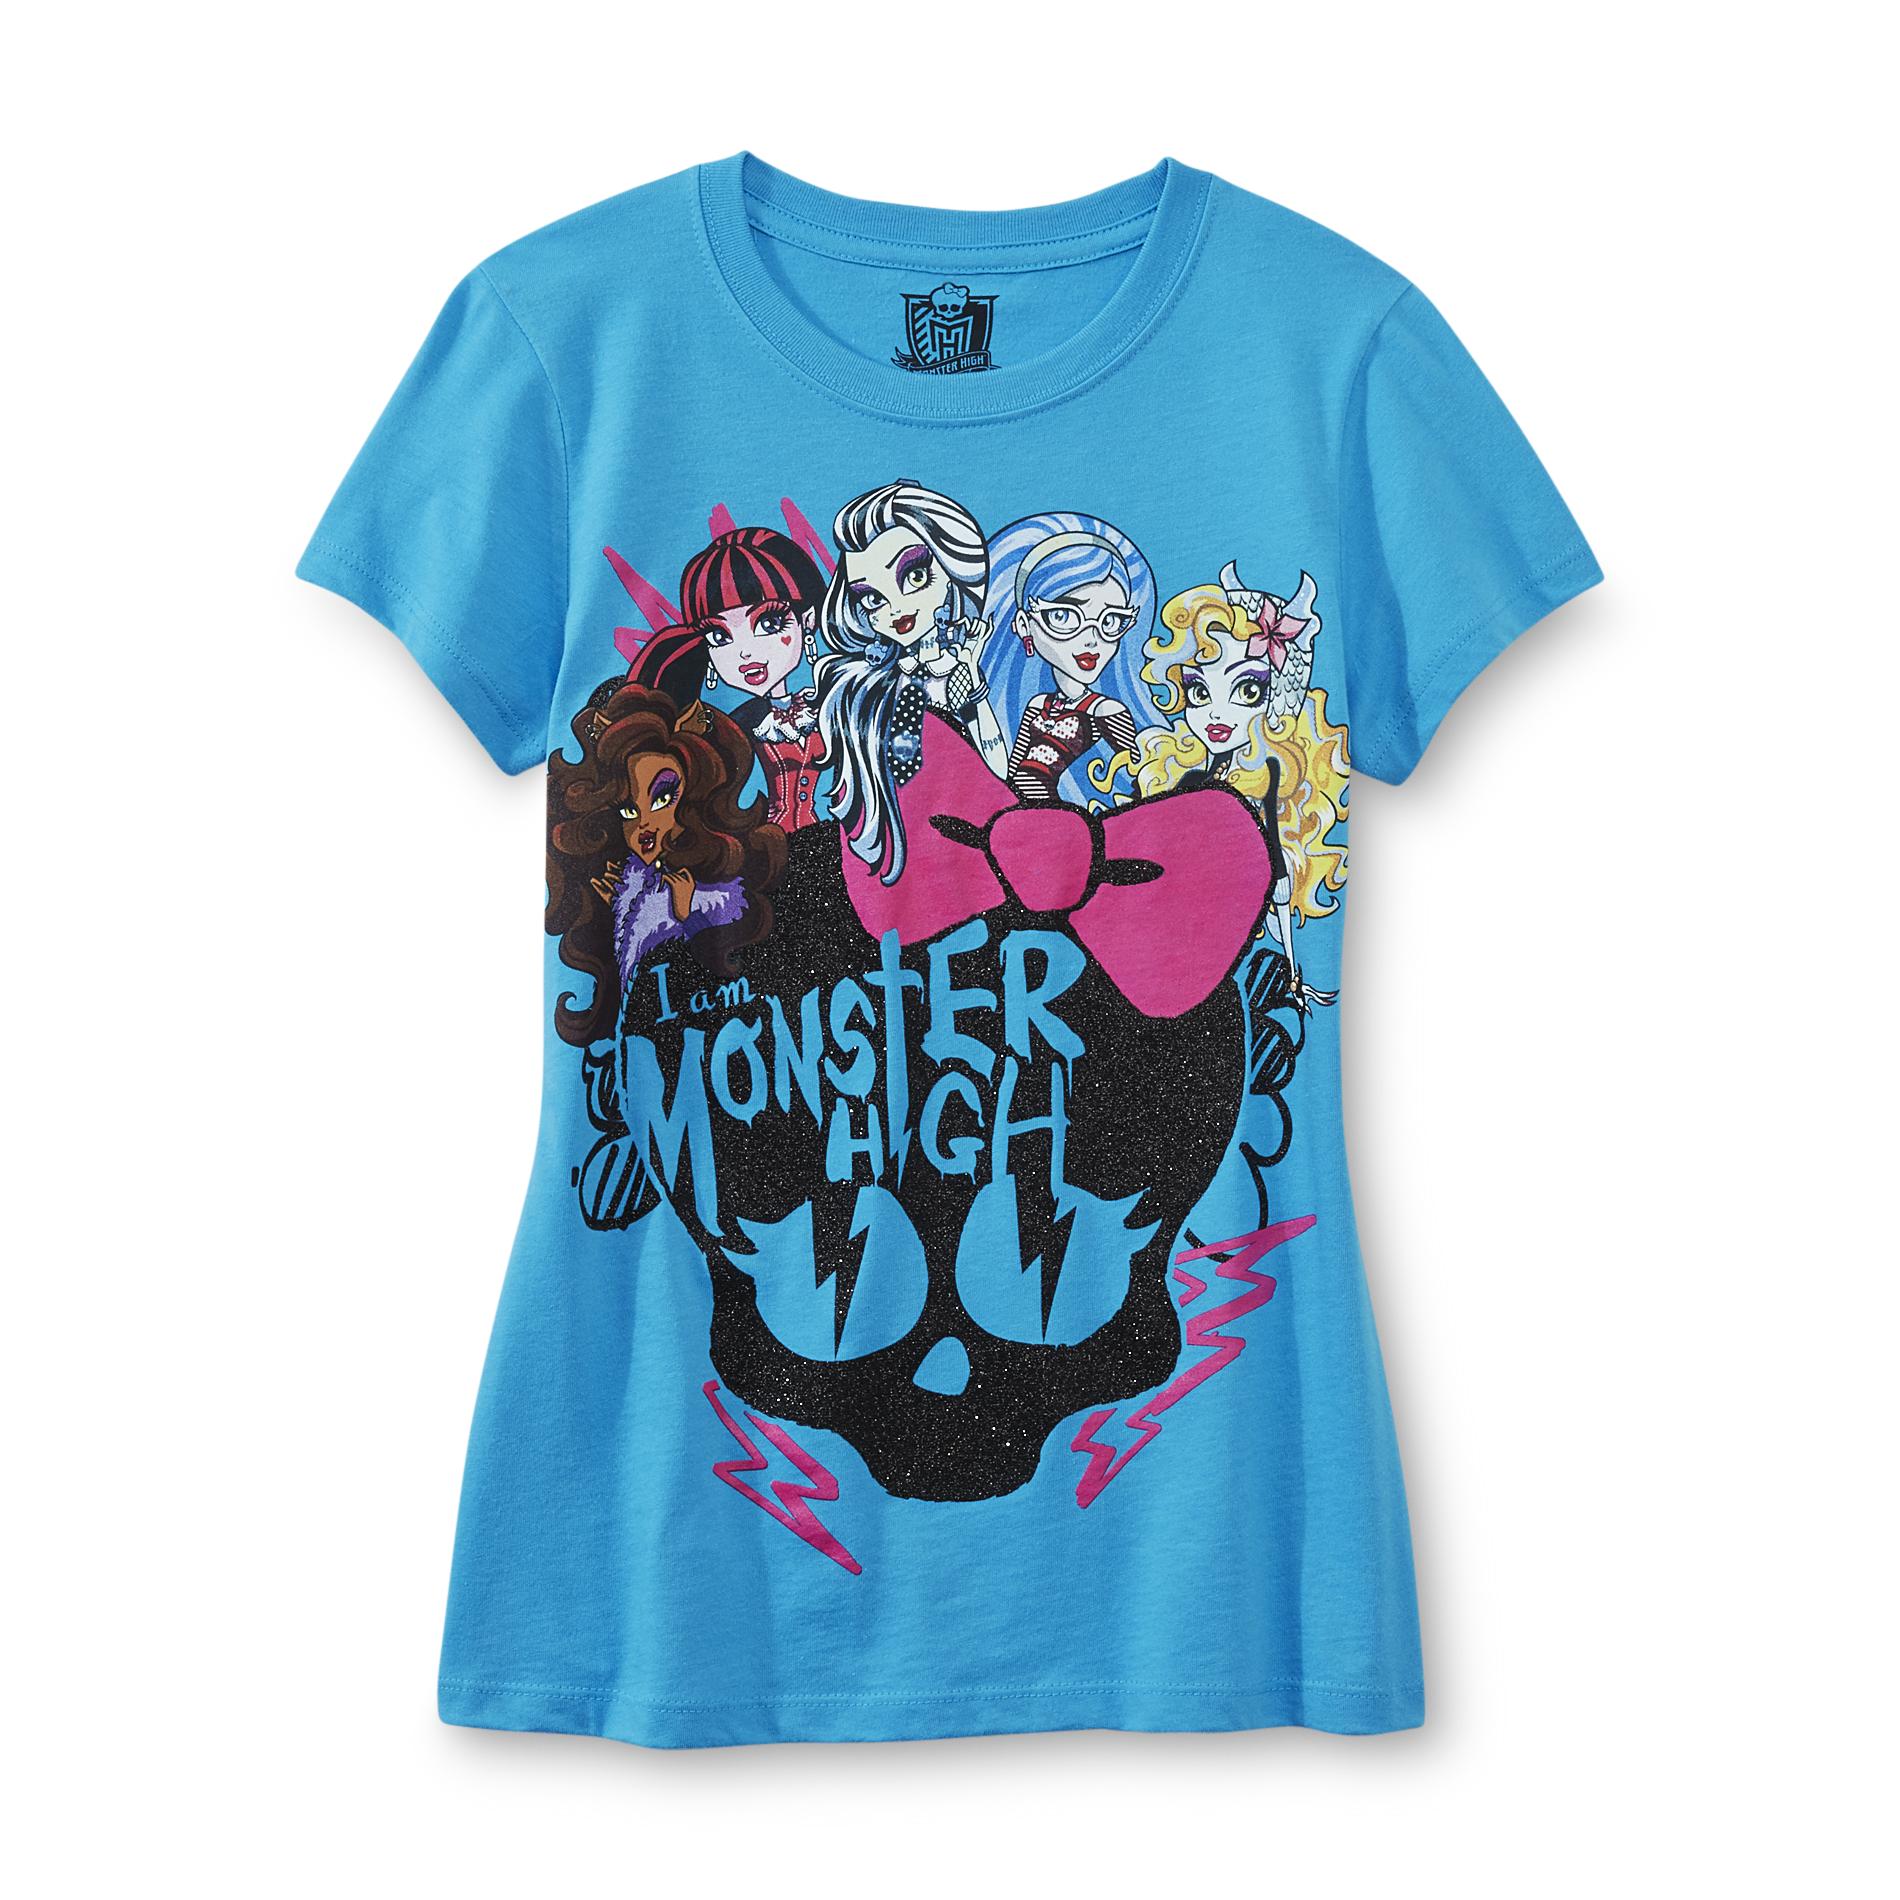 Monster High Girl's Graphic T-Shirt - Glittered Skull